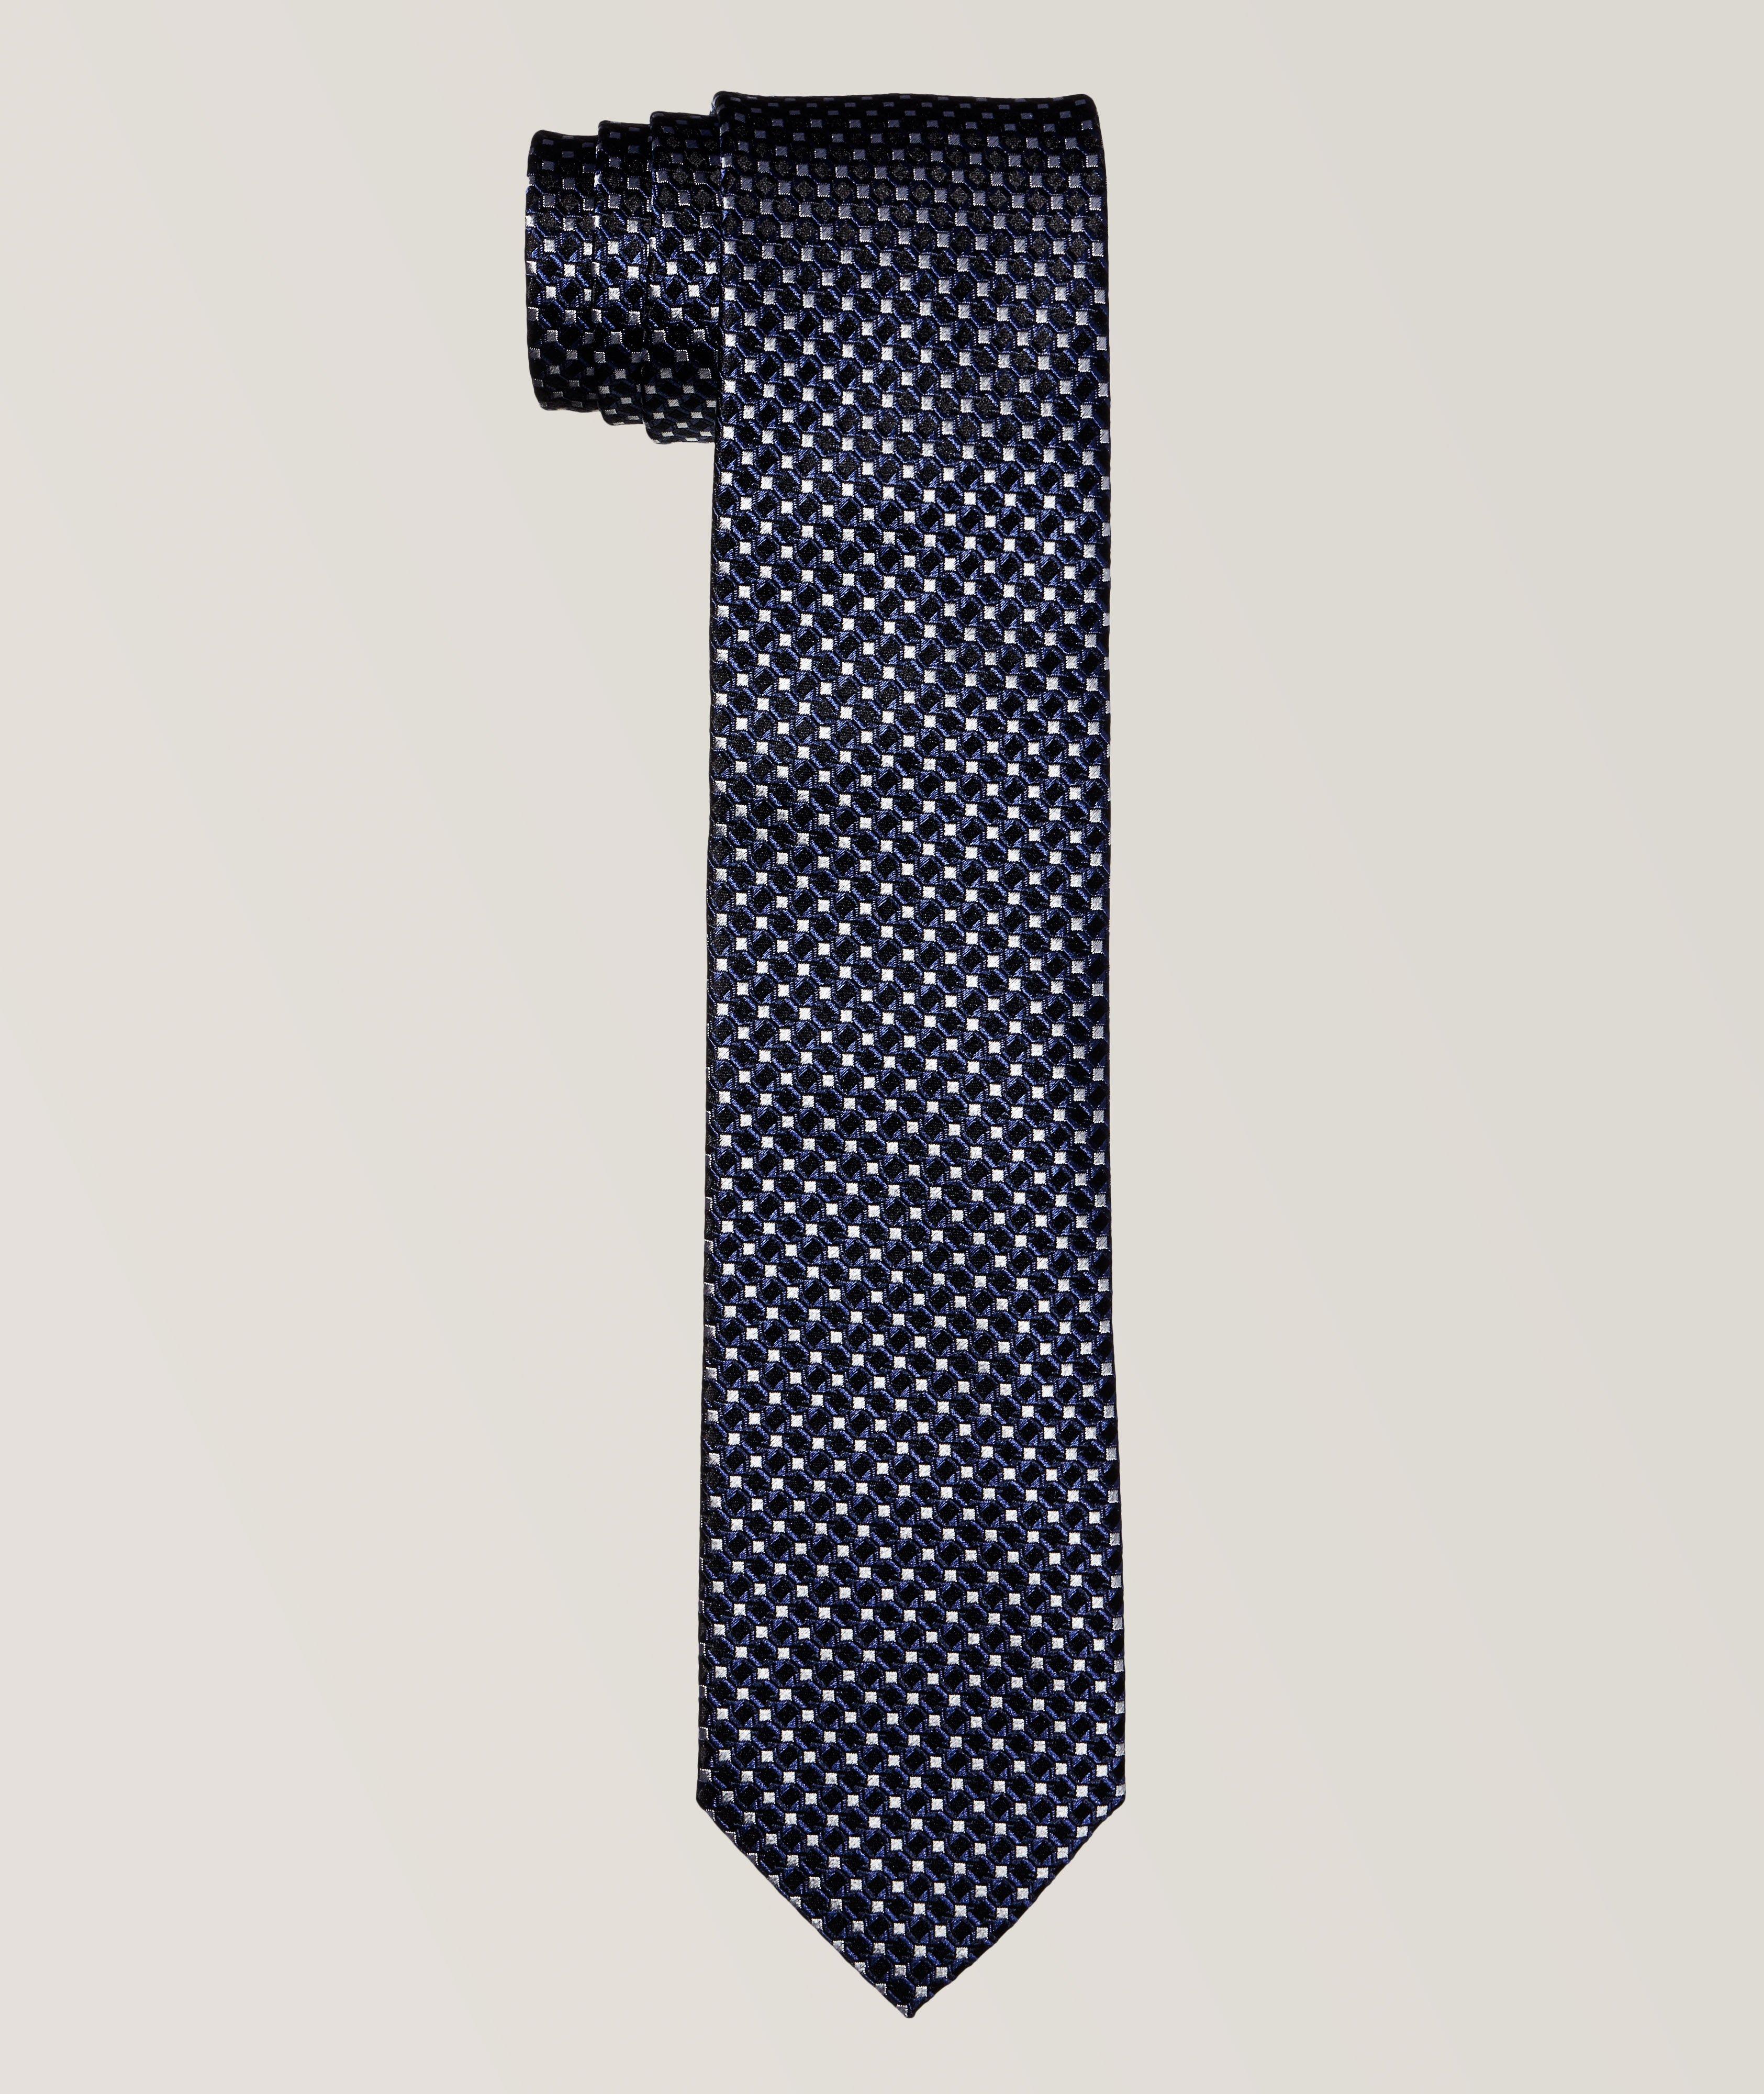 Cravate en soie à motif fantaisiste image 0